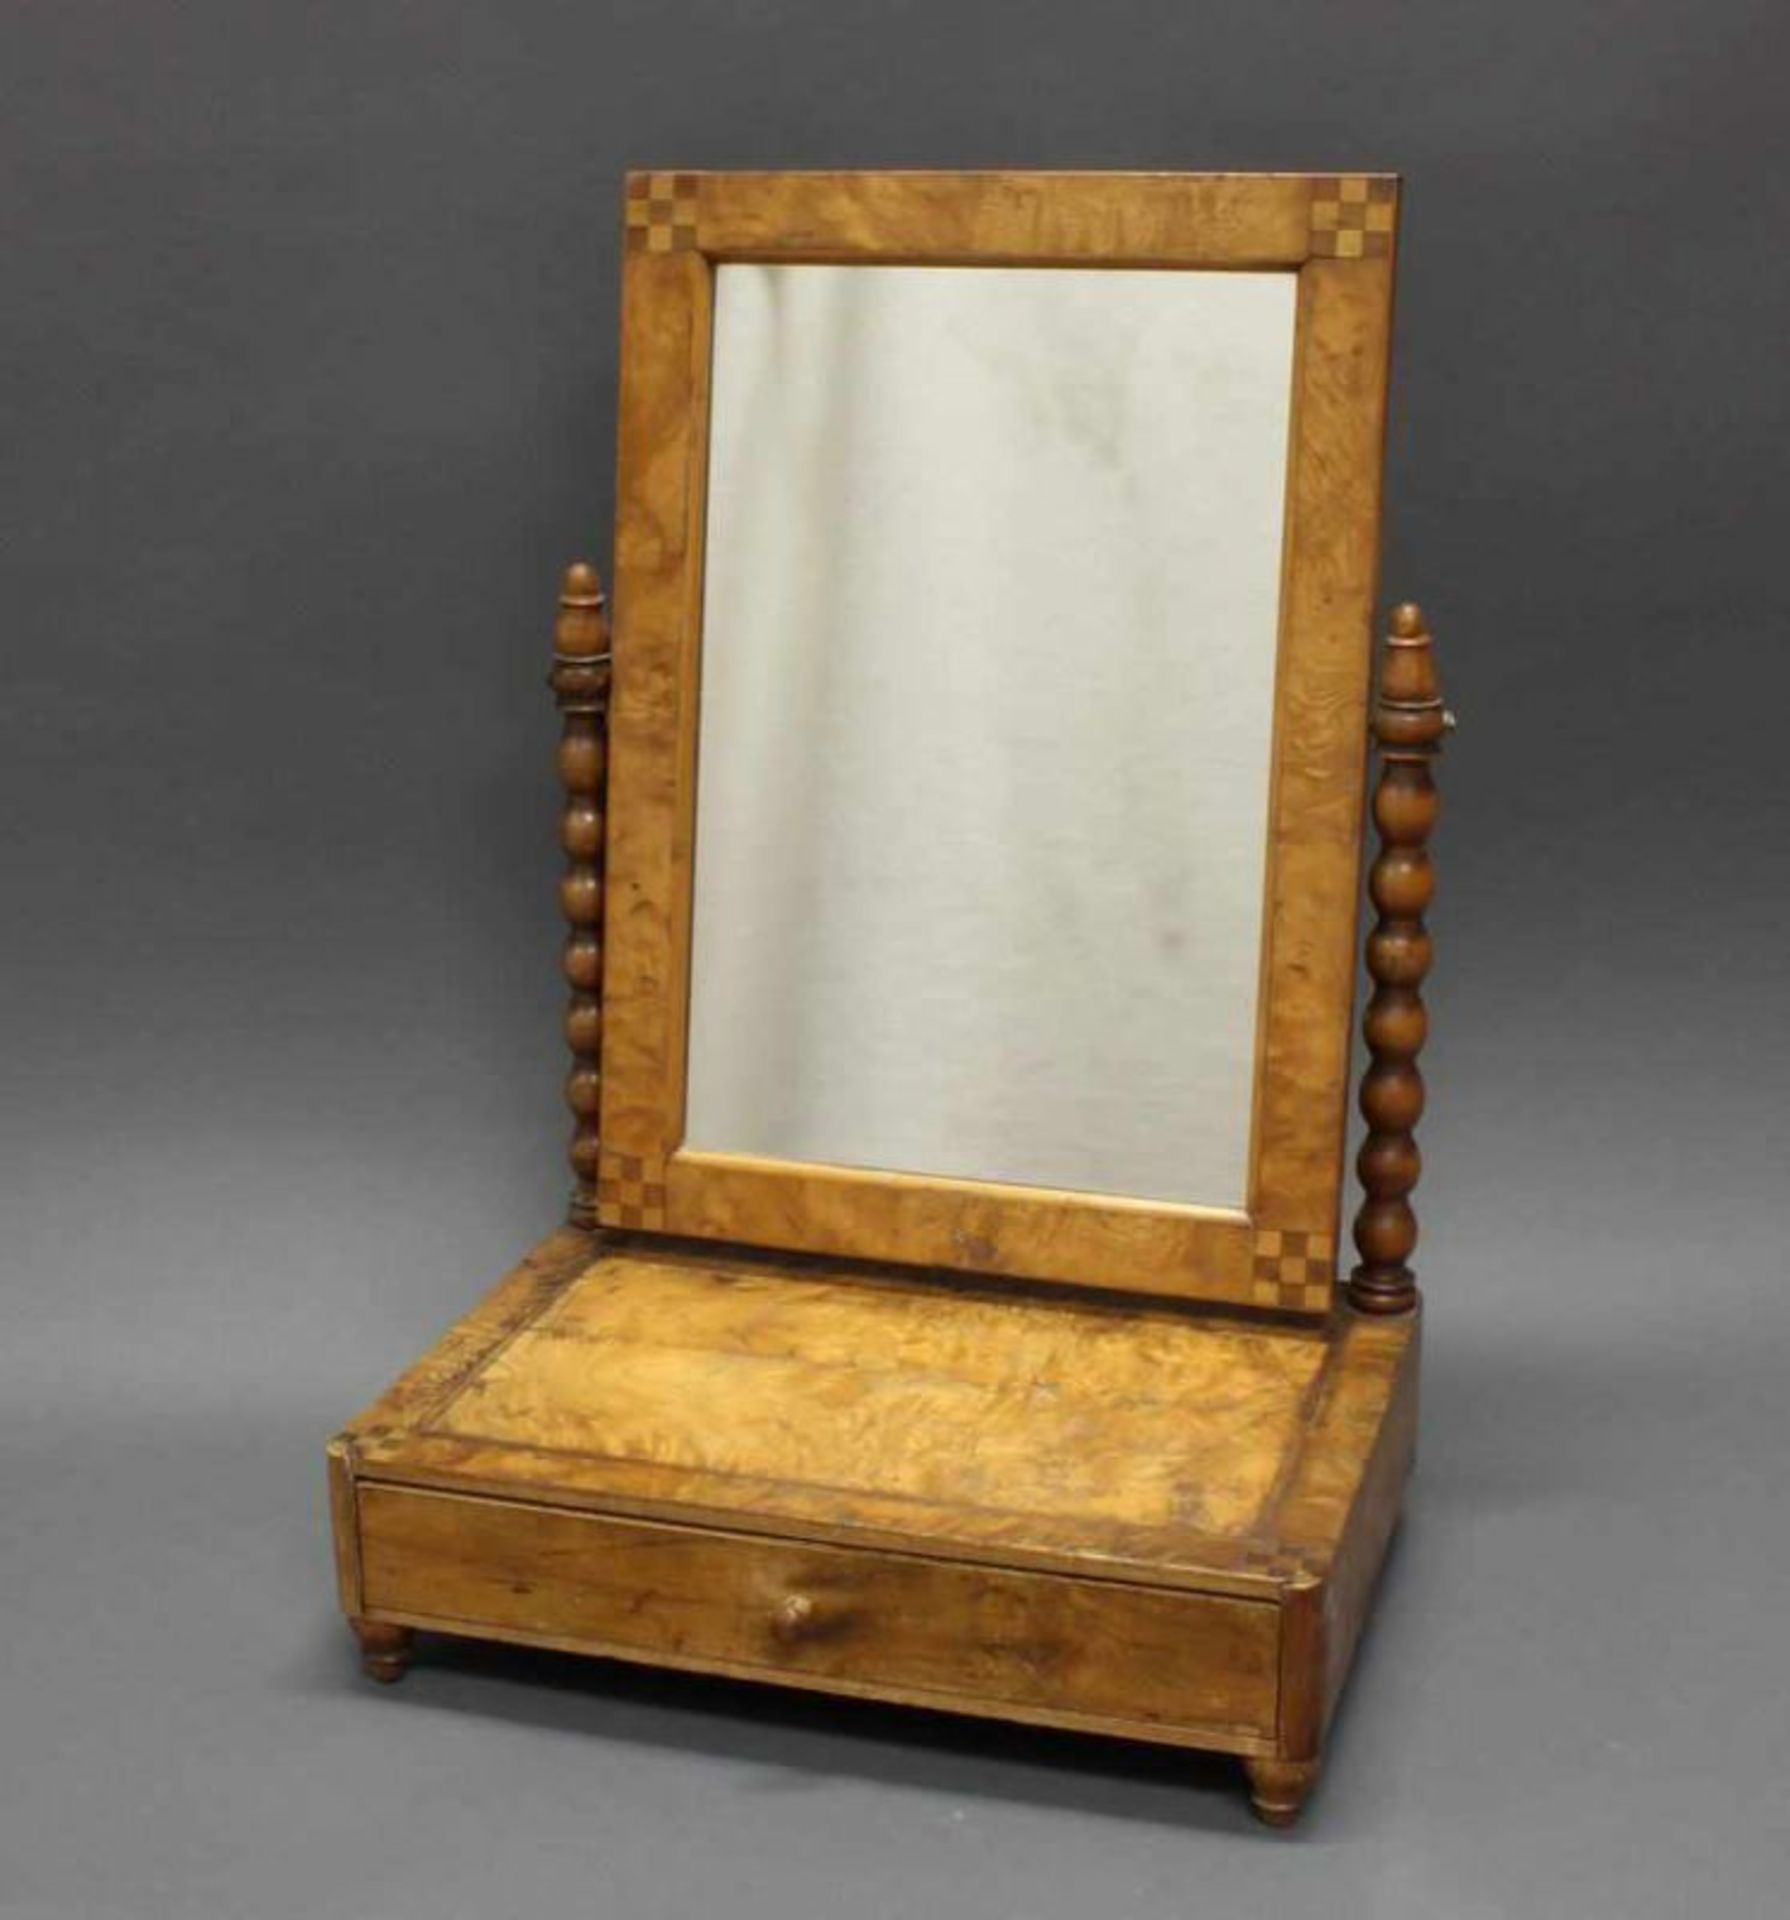 Tischspiegel, 19. Jh., Eschewurzel, kleine Einlegearbeit, ein Schubfach, 60.5 x 41 x 29 cm,